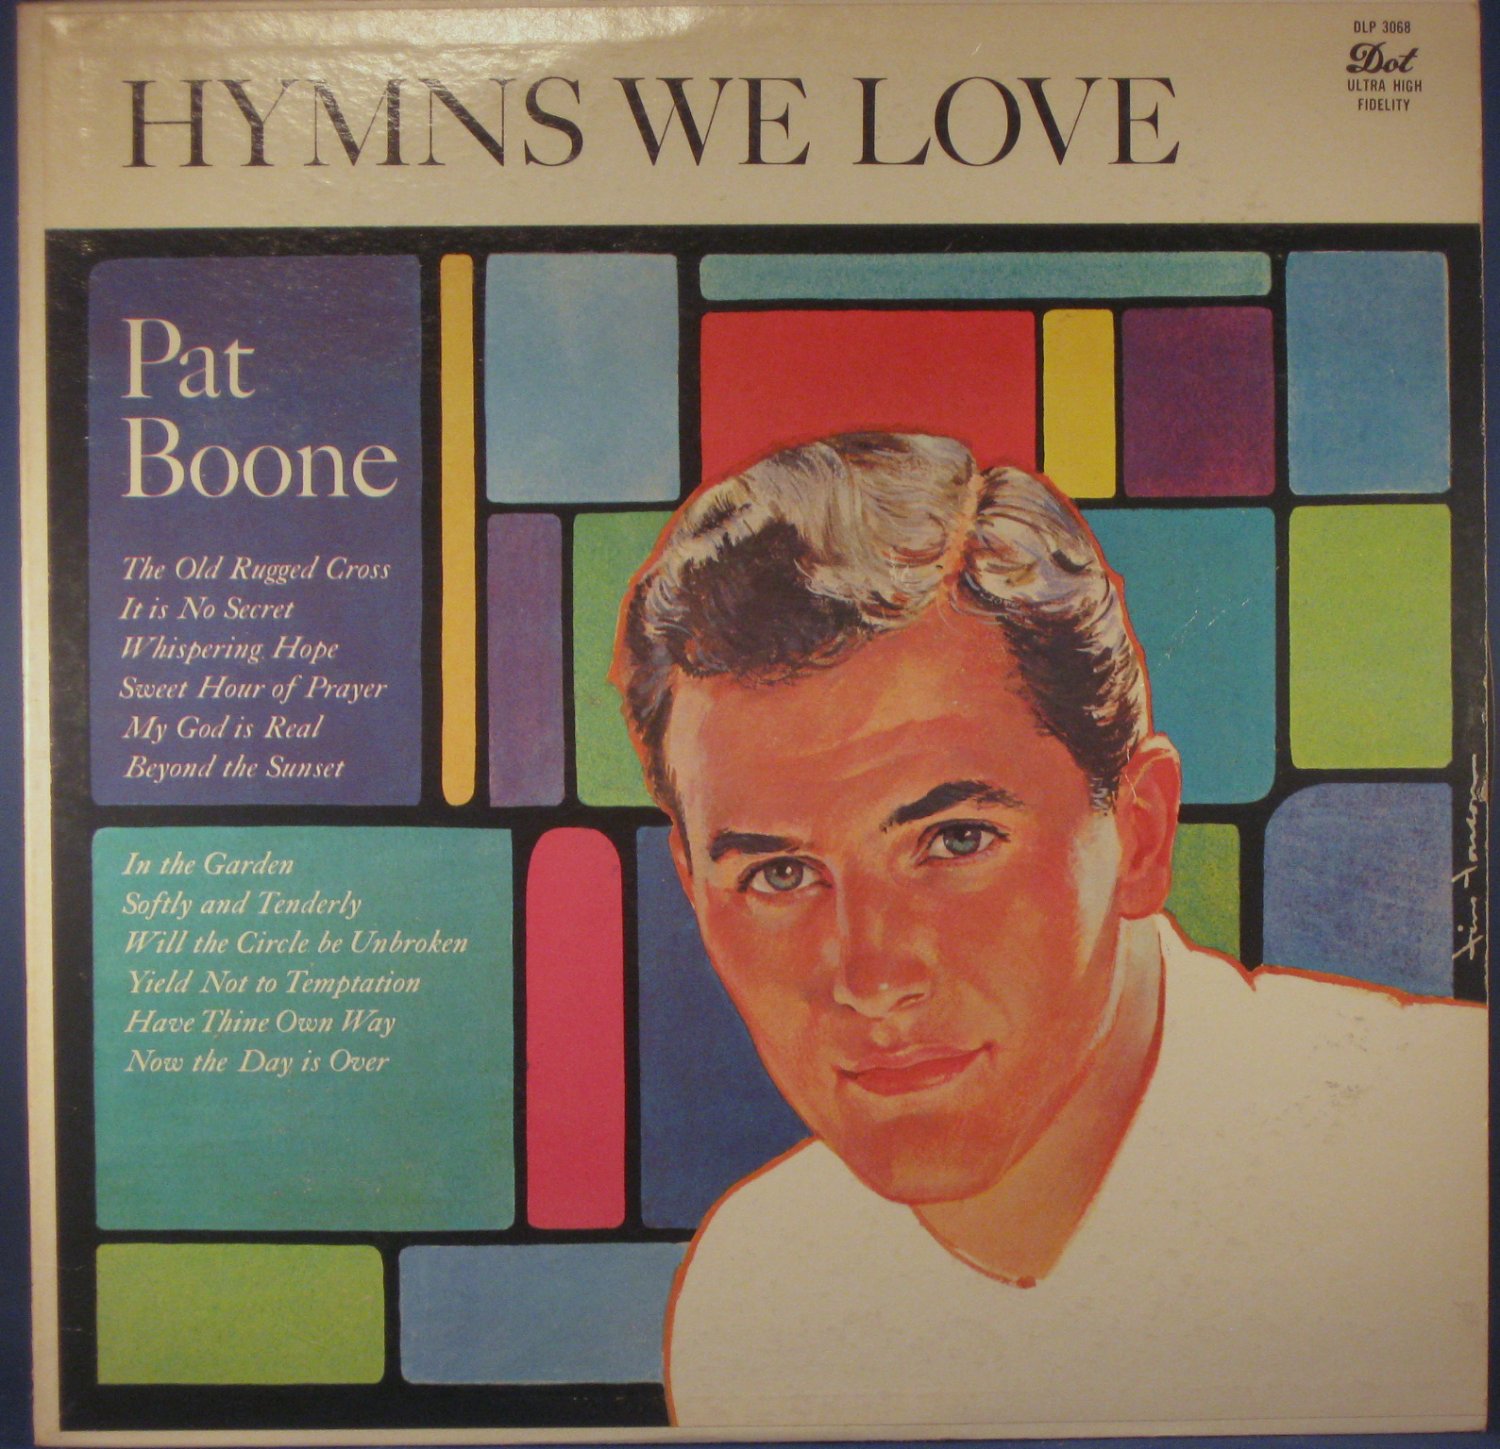 Pat Boone +1957. ПЭТ Бун альбомы. Pat Boone discography. Pat Boone - April Love LP.